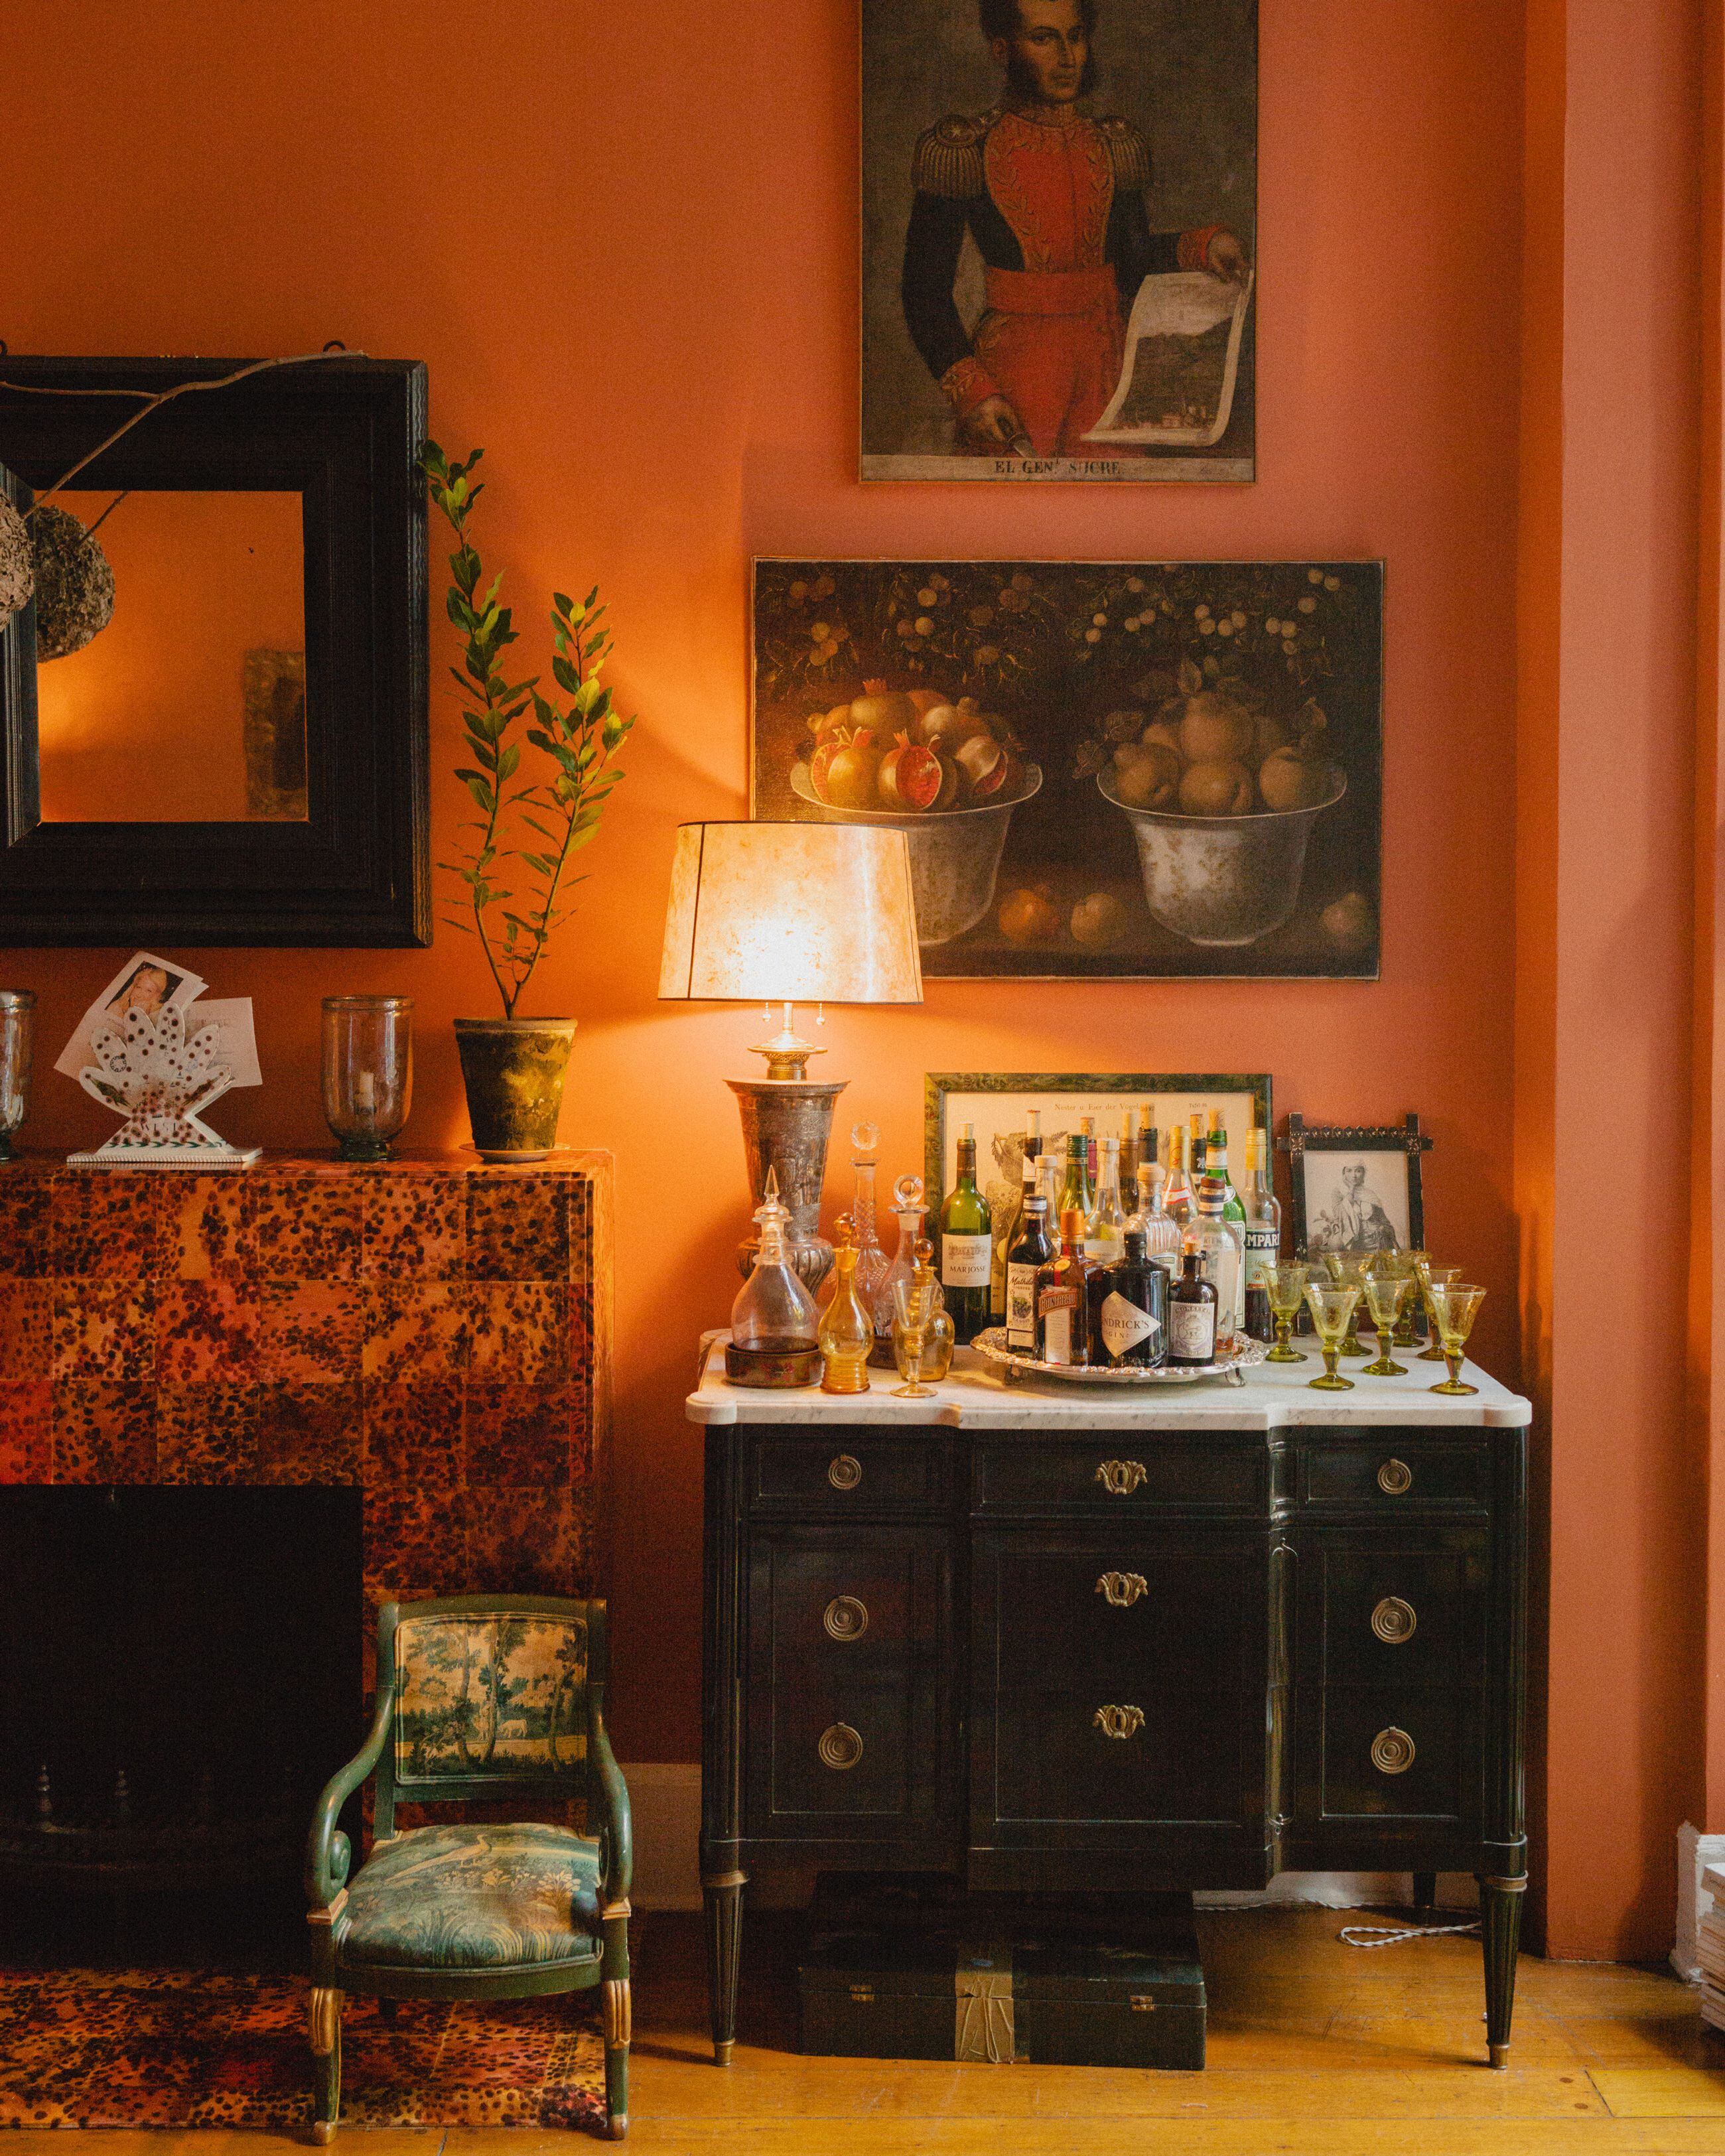 El mueble bar es un aparador Maison Jansen, de los años cincuenta. Los azulejos de la chimenea imitan el efecto del carey. Sobre el espejo, un nido de avispas.